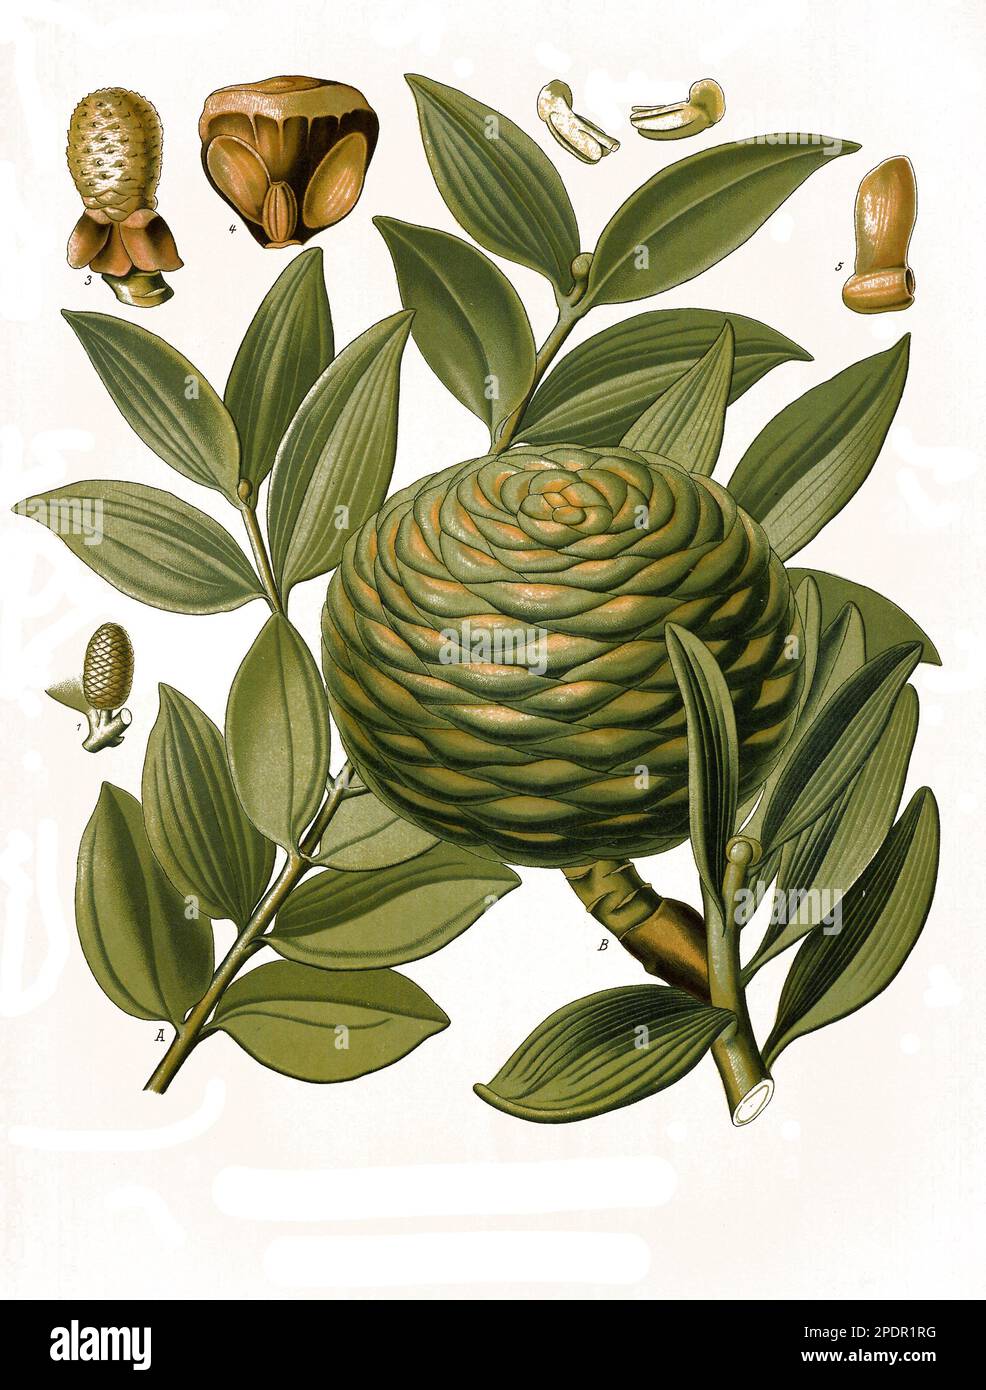 Heilpflanze, Agathis dammara, eine Pflanzenart aus der Familie der Araukariengewächse, Historisch, digital restaurierte Reproduktion von einer Vorlage aus dem 19. Jahrhundert, Stock Photo